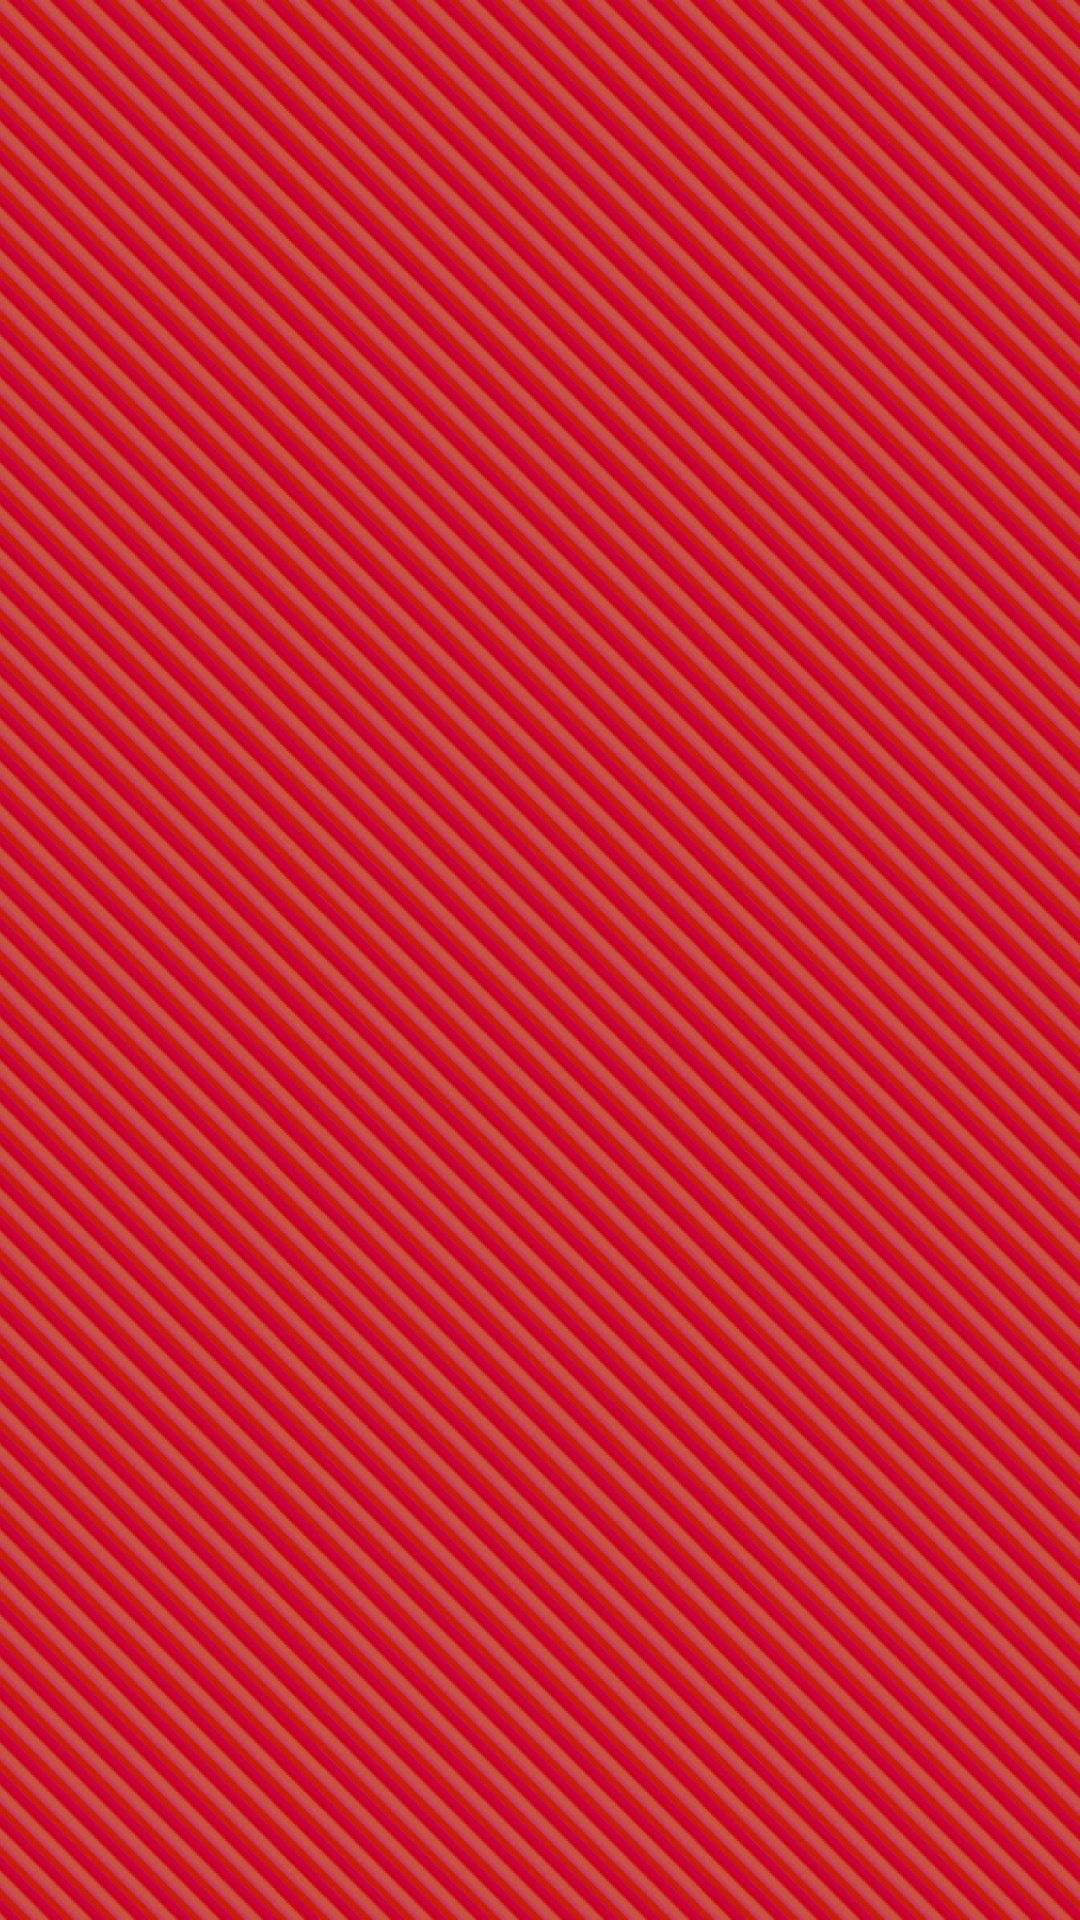 Rot-weiß Gestreiftes Textil. Wallpaper in 1080x1920 Resolution